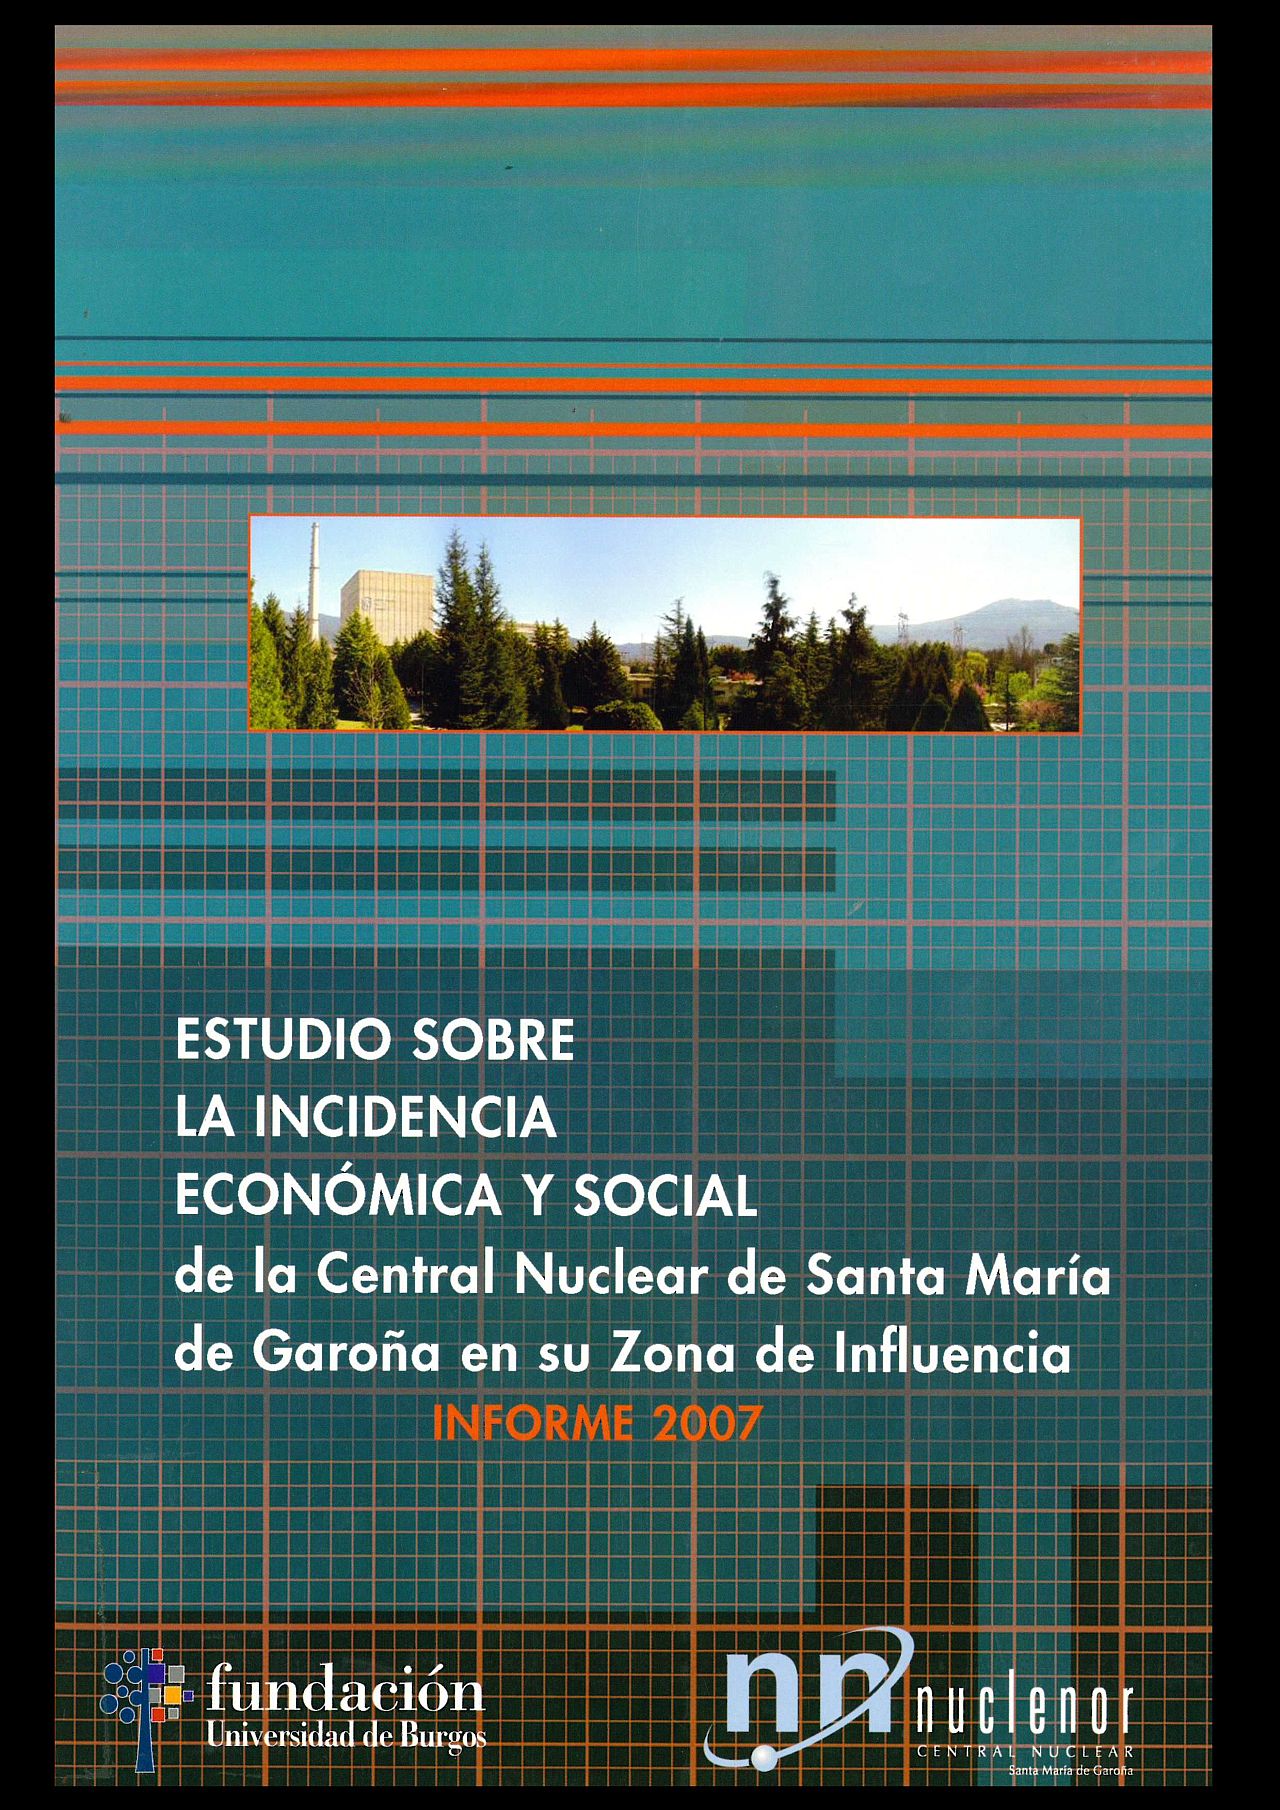 Imagen de portada del libro Estudio sobre la incidencia económica y social de la central nuclear de Santa María de Garoña en su zona de influencia